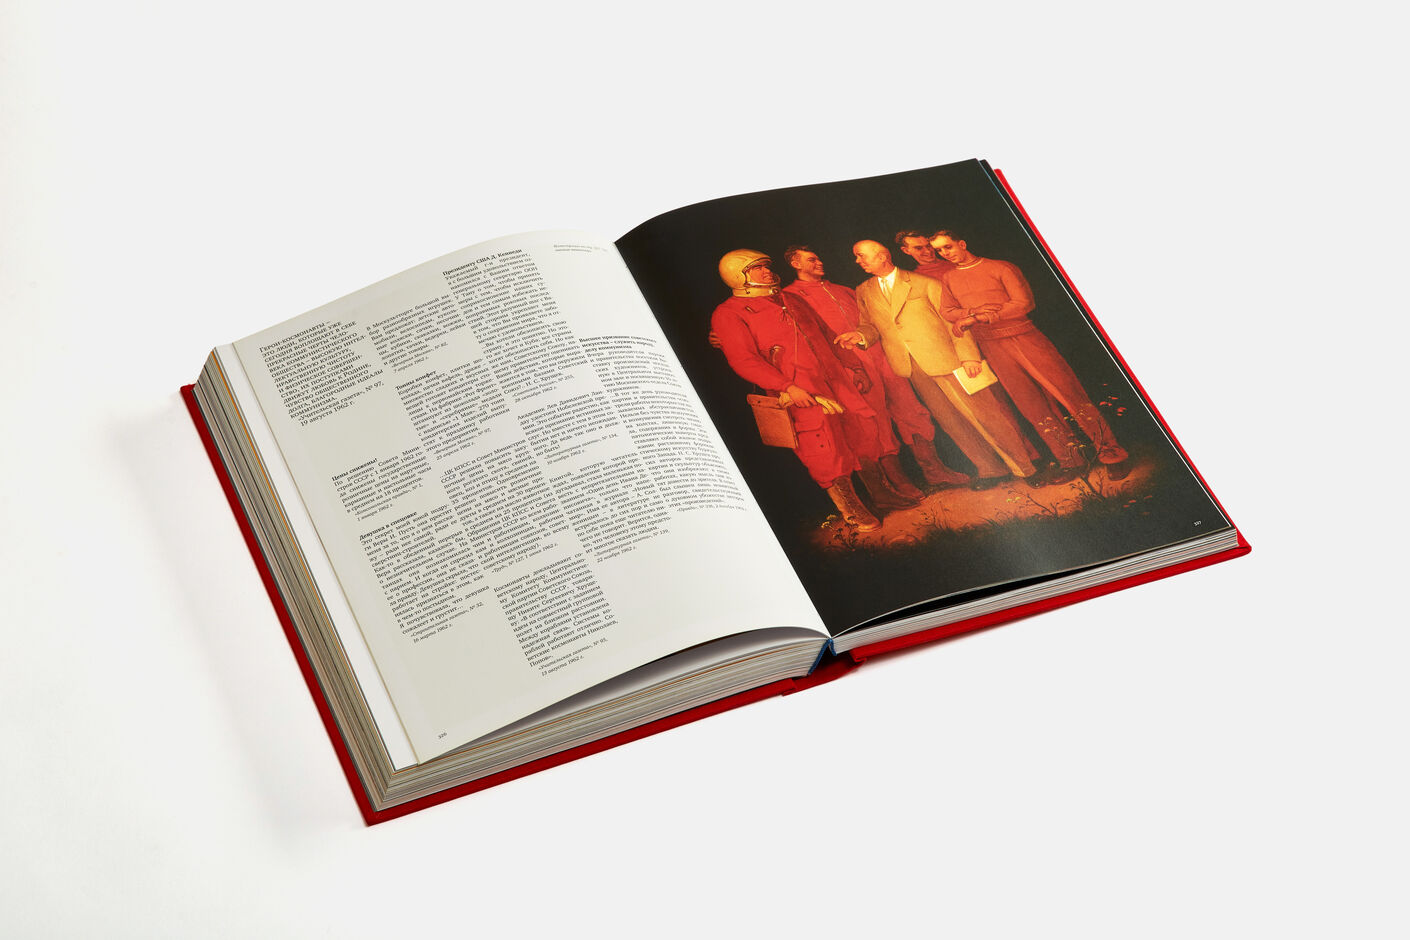 Подарочная книга Россий 20-й век, 2003, Агей Томеш, Лаборатория дизайна НИУ ВШЭ